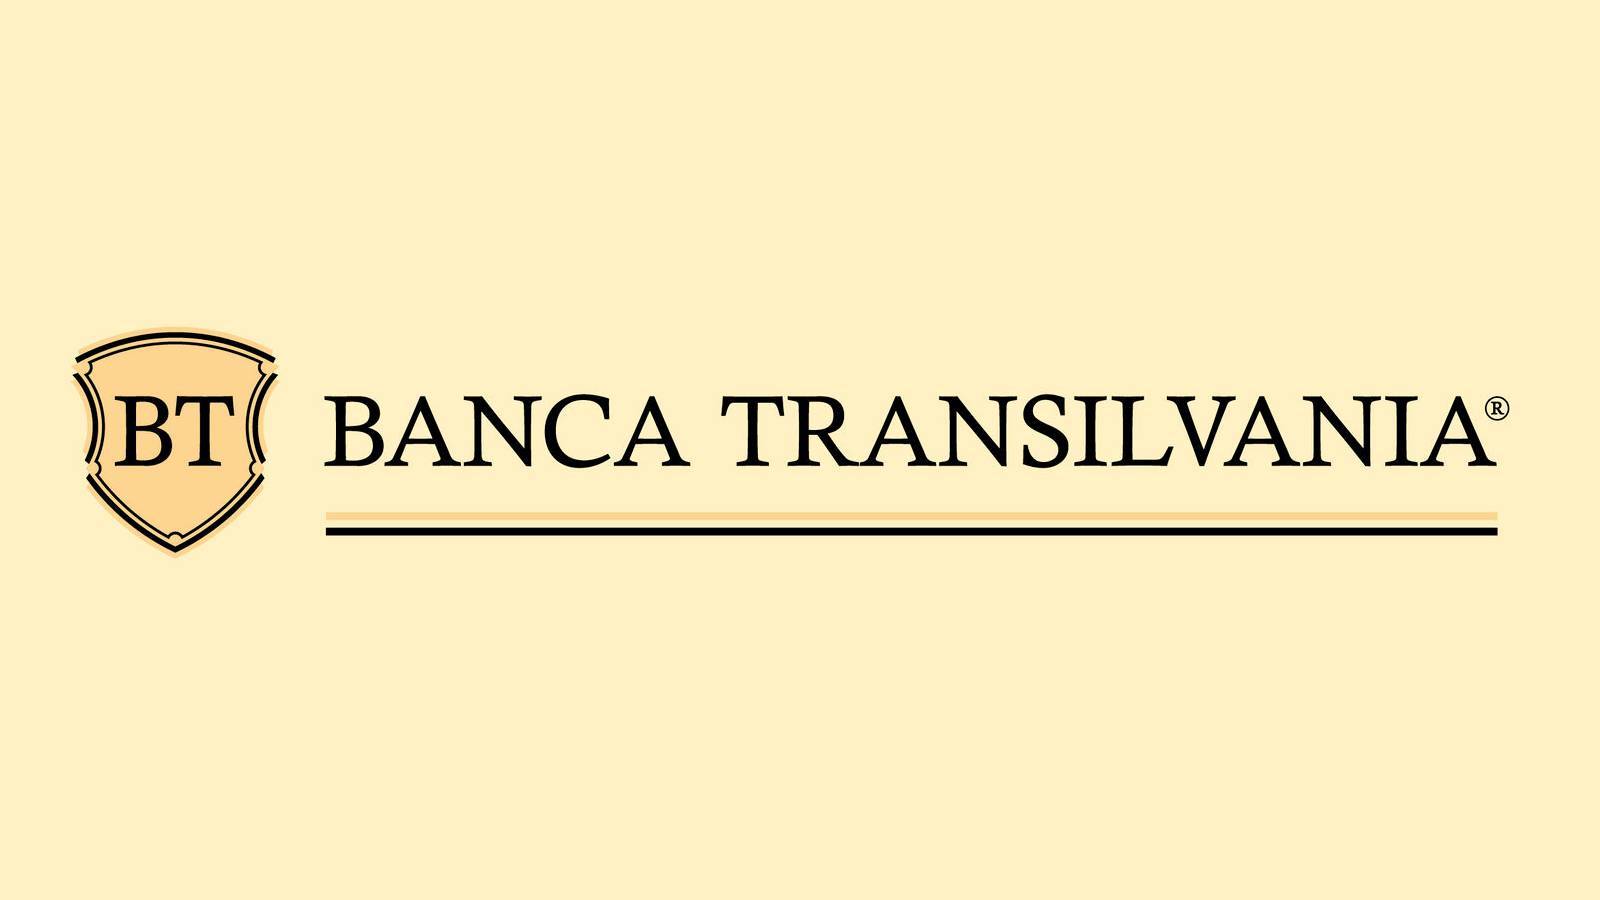 BANCA Transilvania Nye officielle foranstaltninger SIDSTE MINUTE ÆNDRINGER Vigtige rumænere